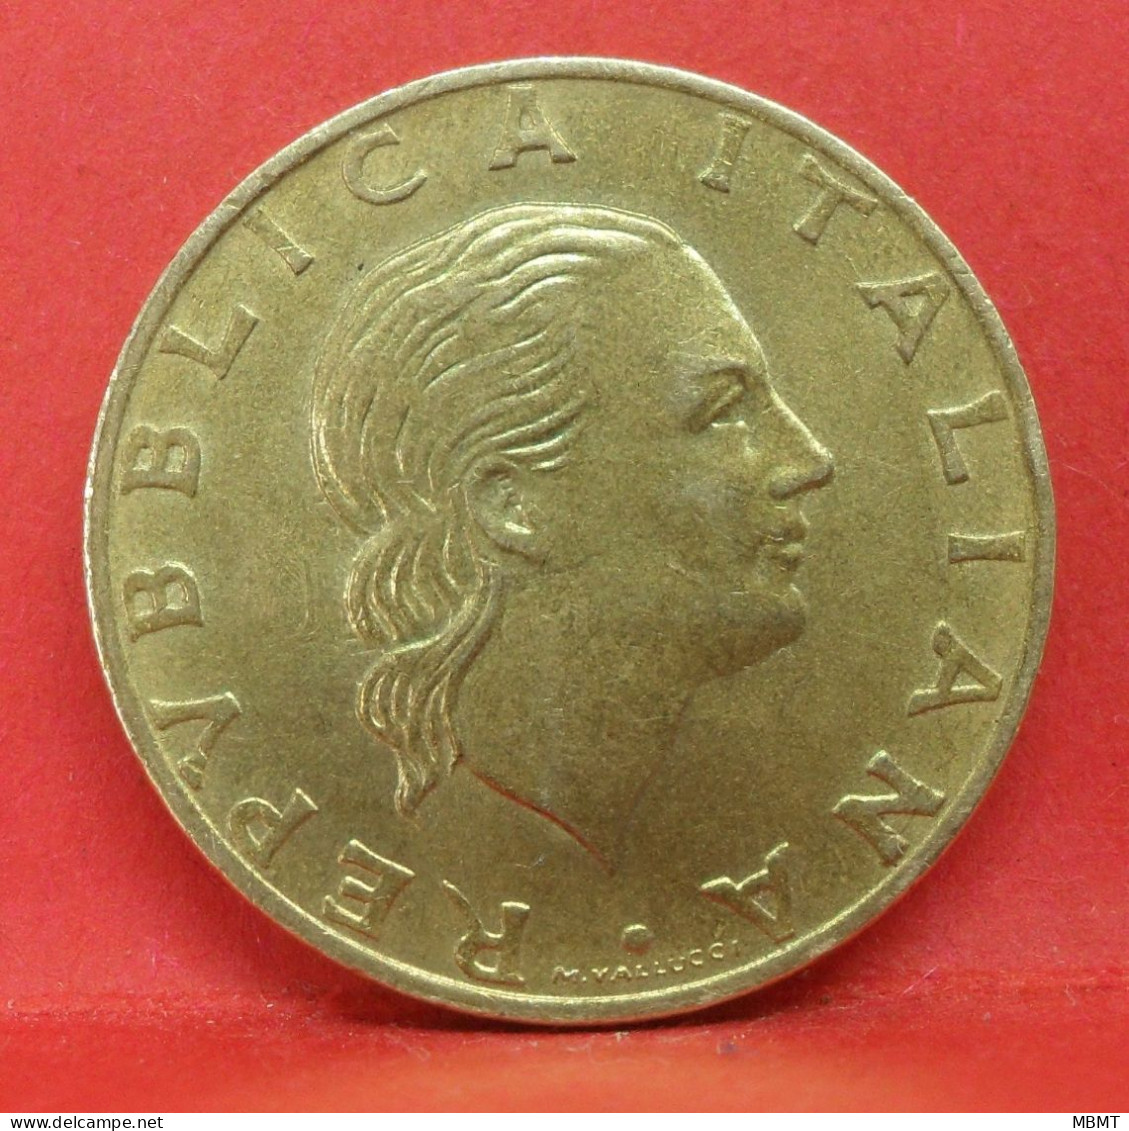 200 Lire 1989 - SUP - Pièce De Monnaie Italie - Article N°3587 - Commémoratives